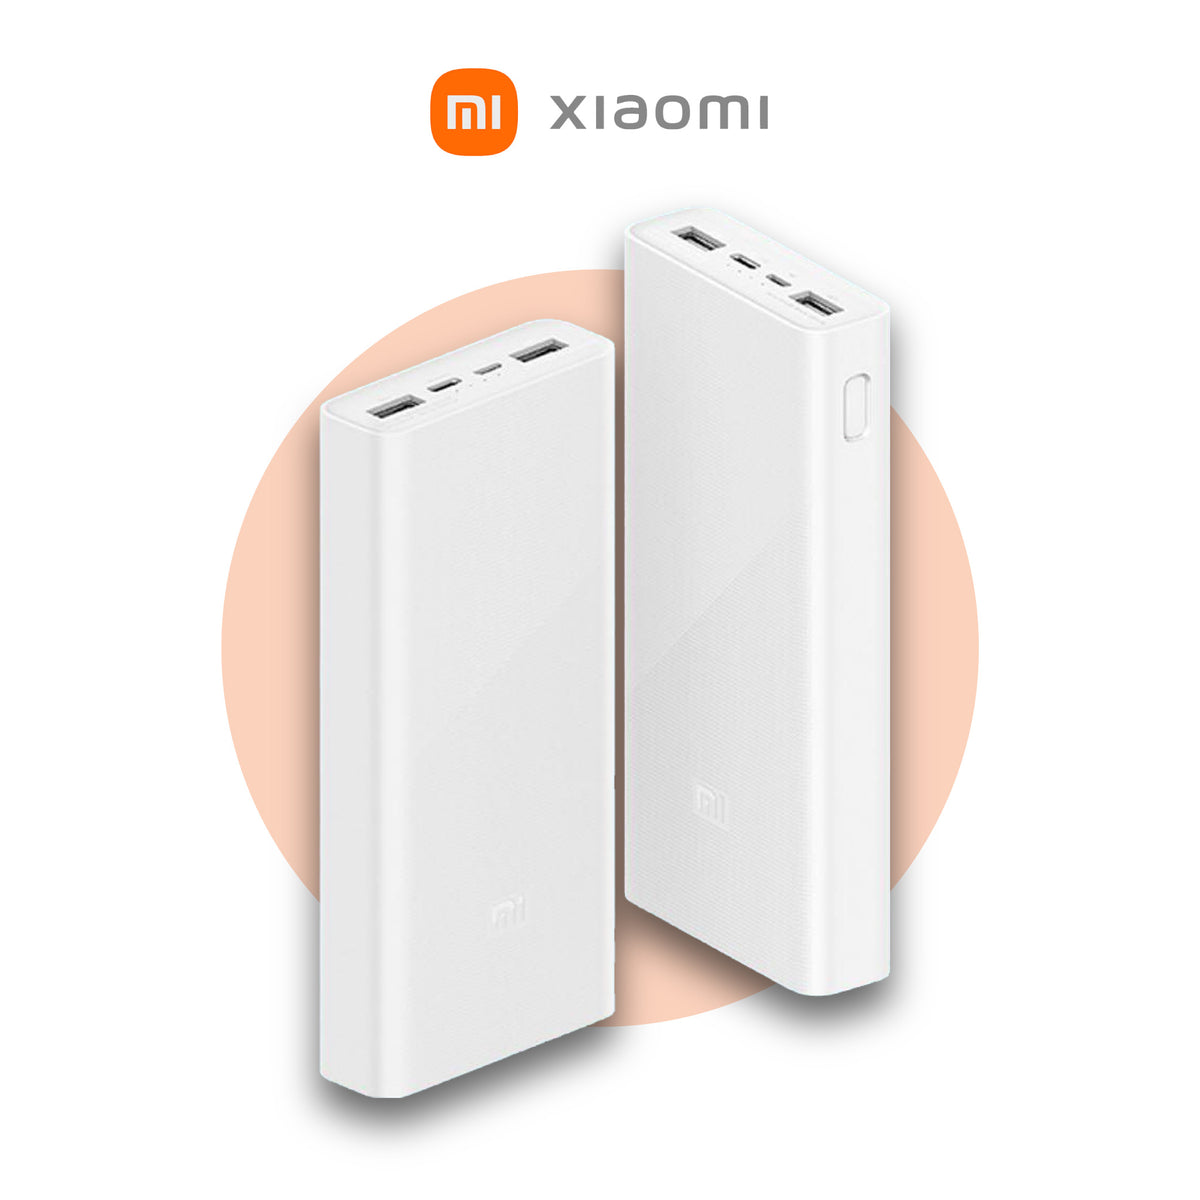 Xiaomi Powerbank 3 20000mAh 22.5W / 18W